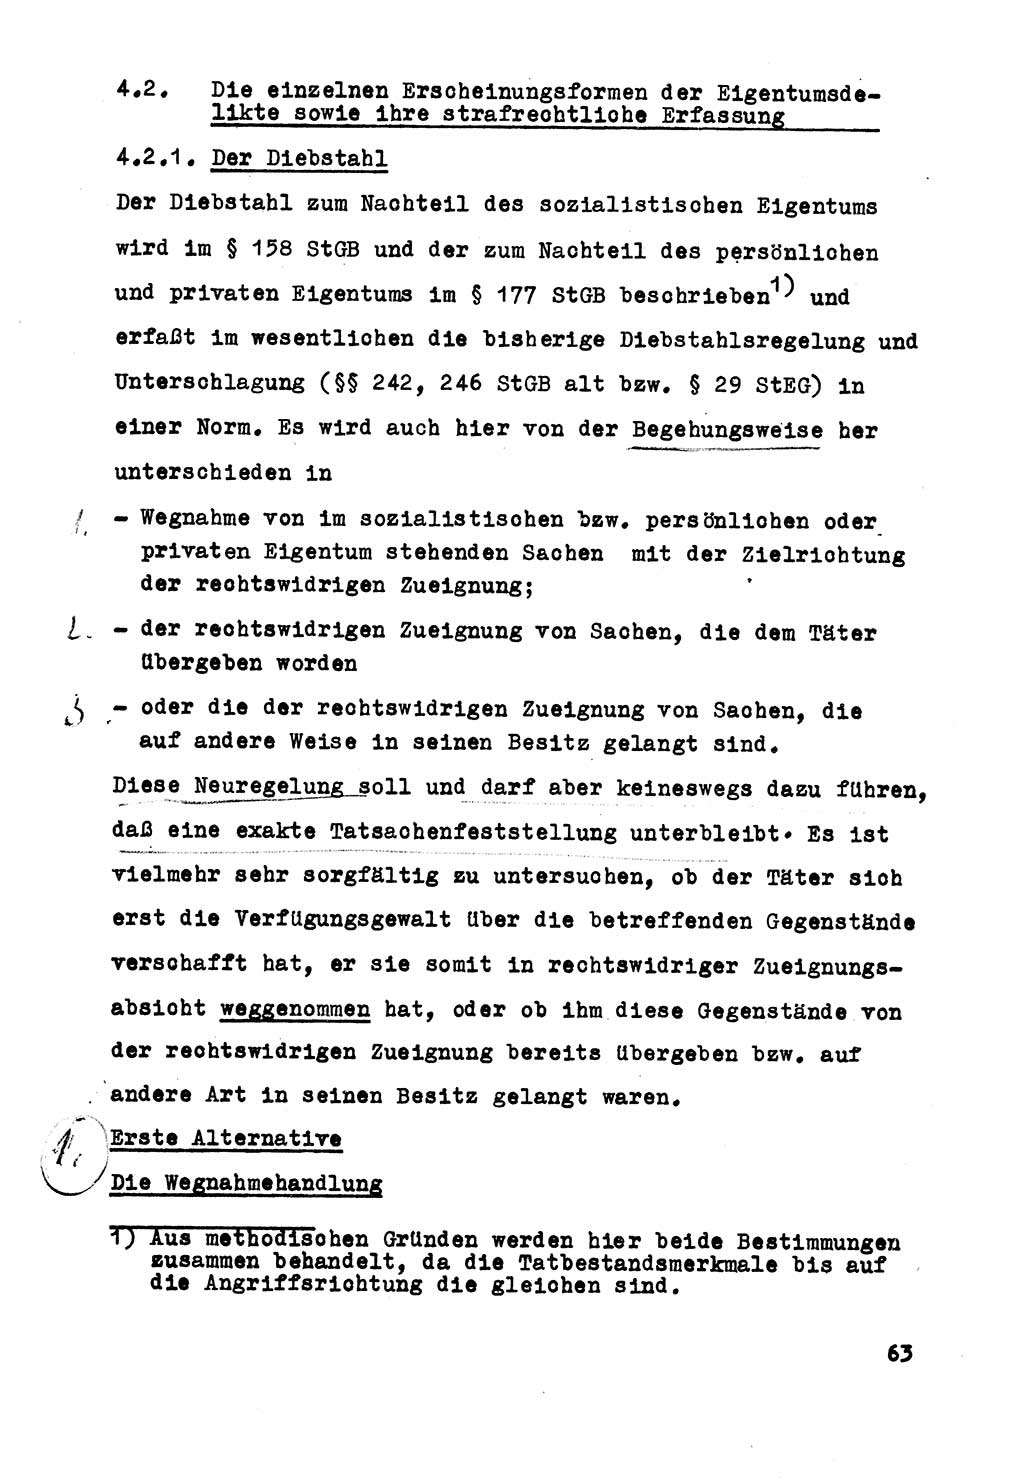 Strafrecht der DDR (Deutsche Demokratische Republik), Besonderer Teil, Lehrmaterial, Heft 5 1970, Seite 63 (Strafr. DDR BT Lehrmat. H. 5 1970, S. 63)